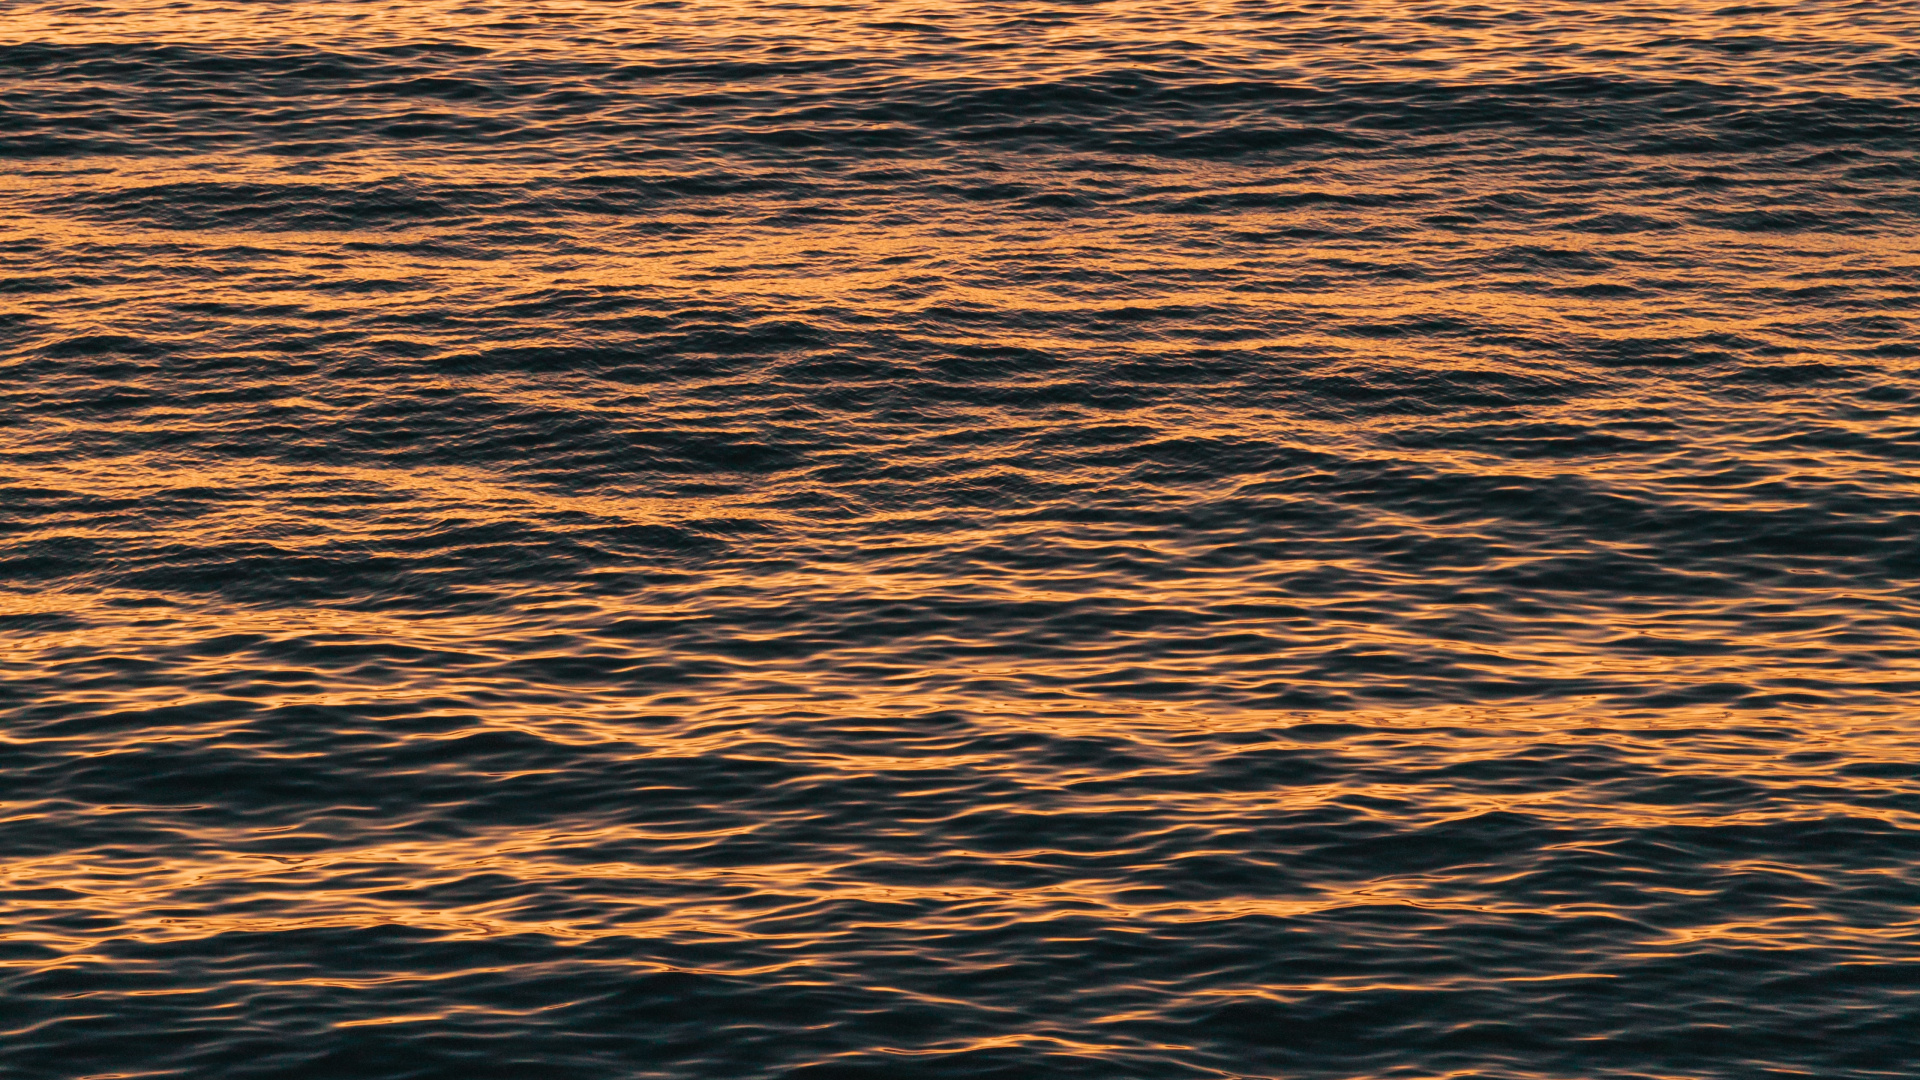 Agua, Mar, Oceano, Calma, Reflexión. Wallpaper in 1920x1080 Resolution